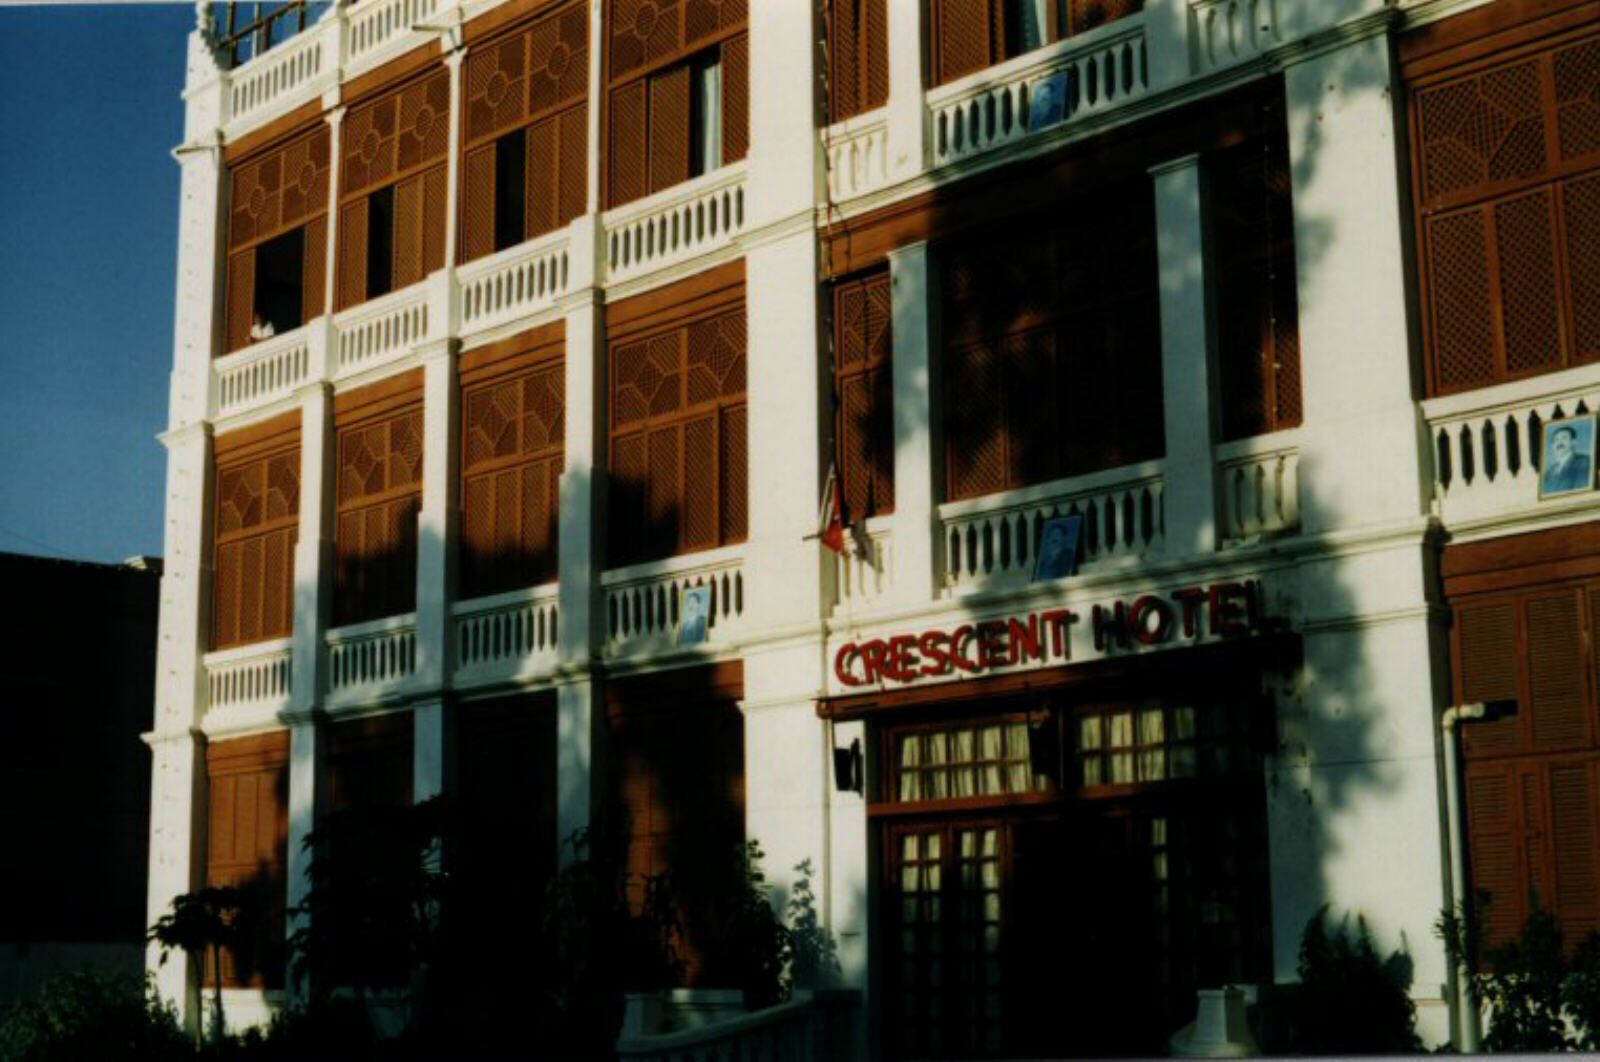 The Crescent Hotel in Aden, Yemen